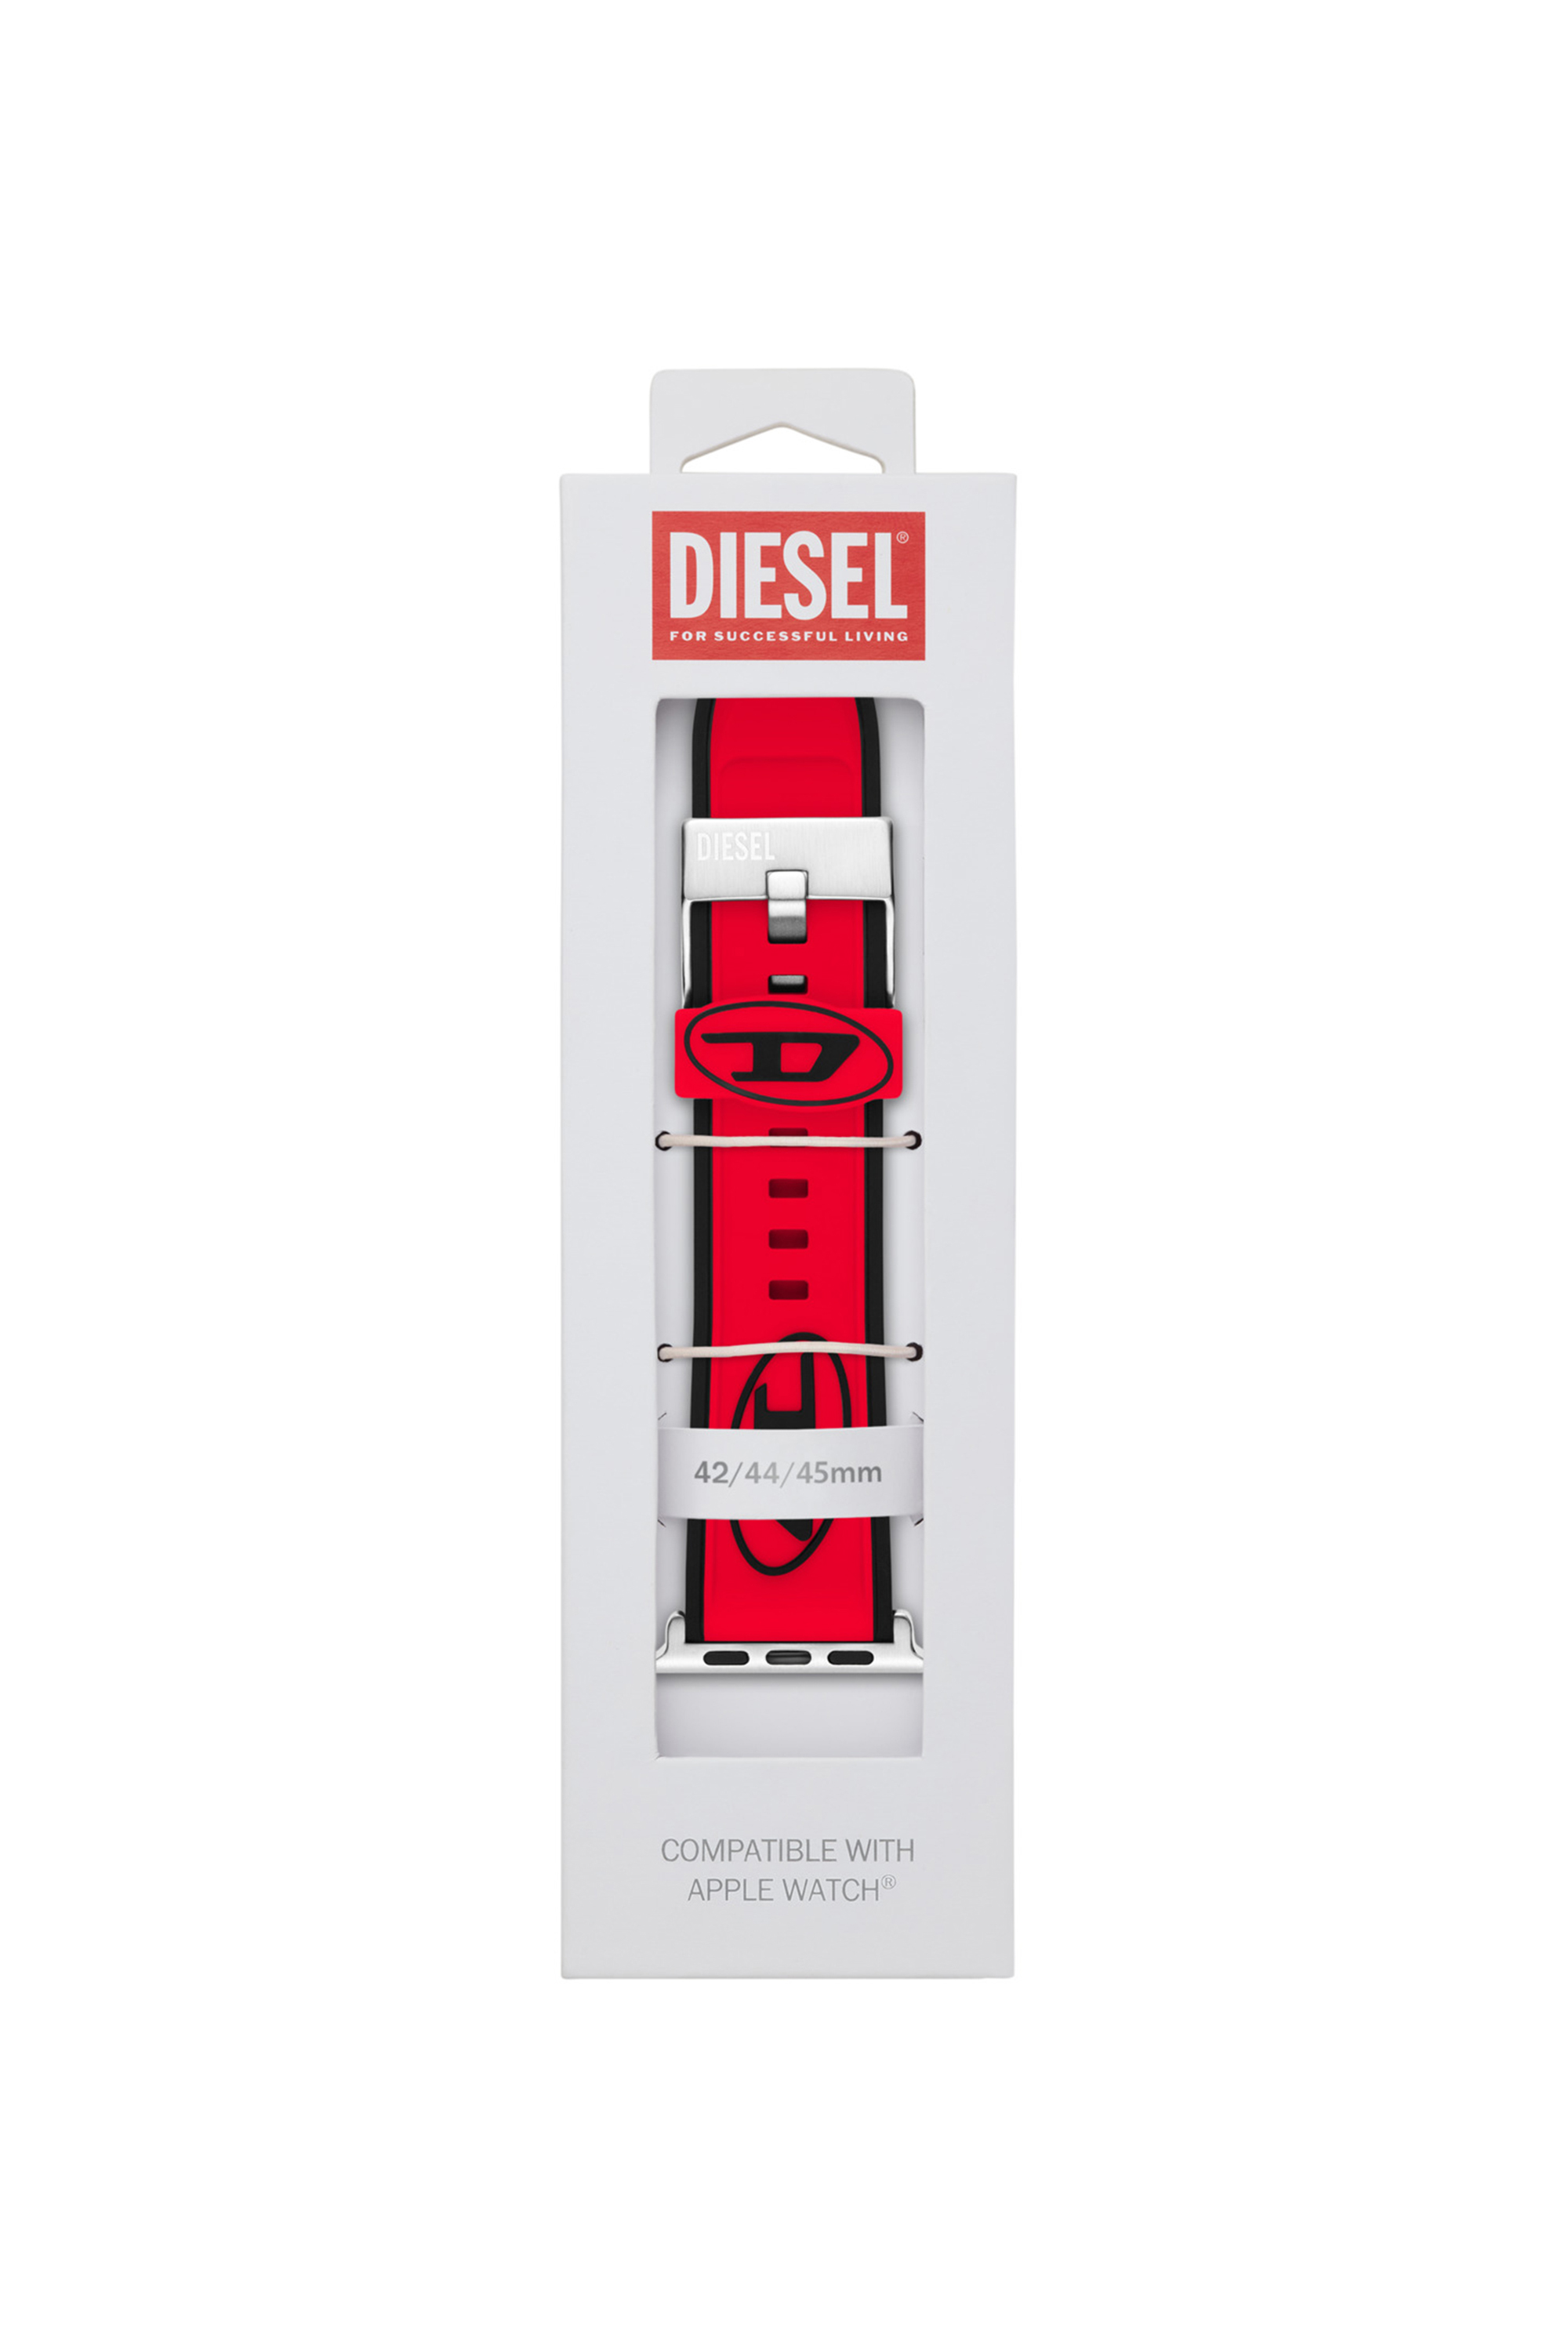 Diesel - DSS010, Rot - Image 2